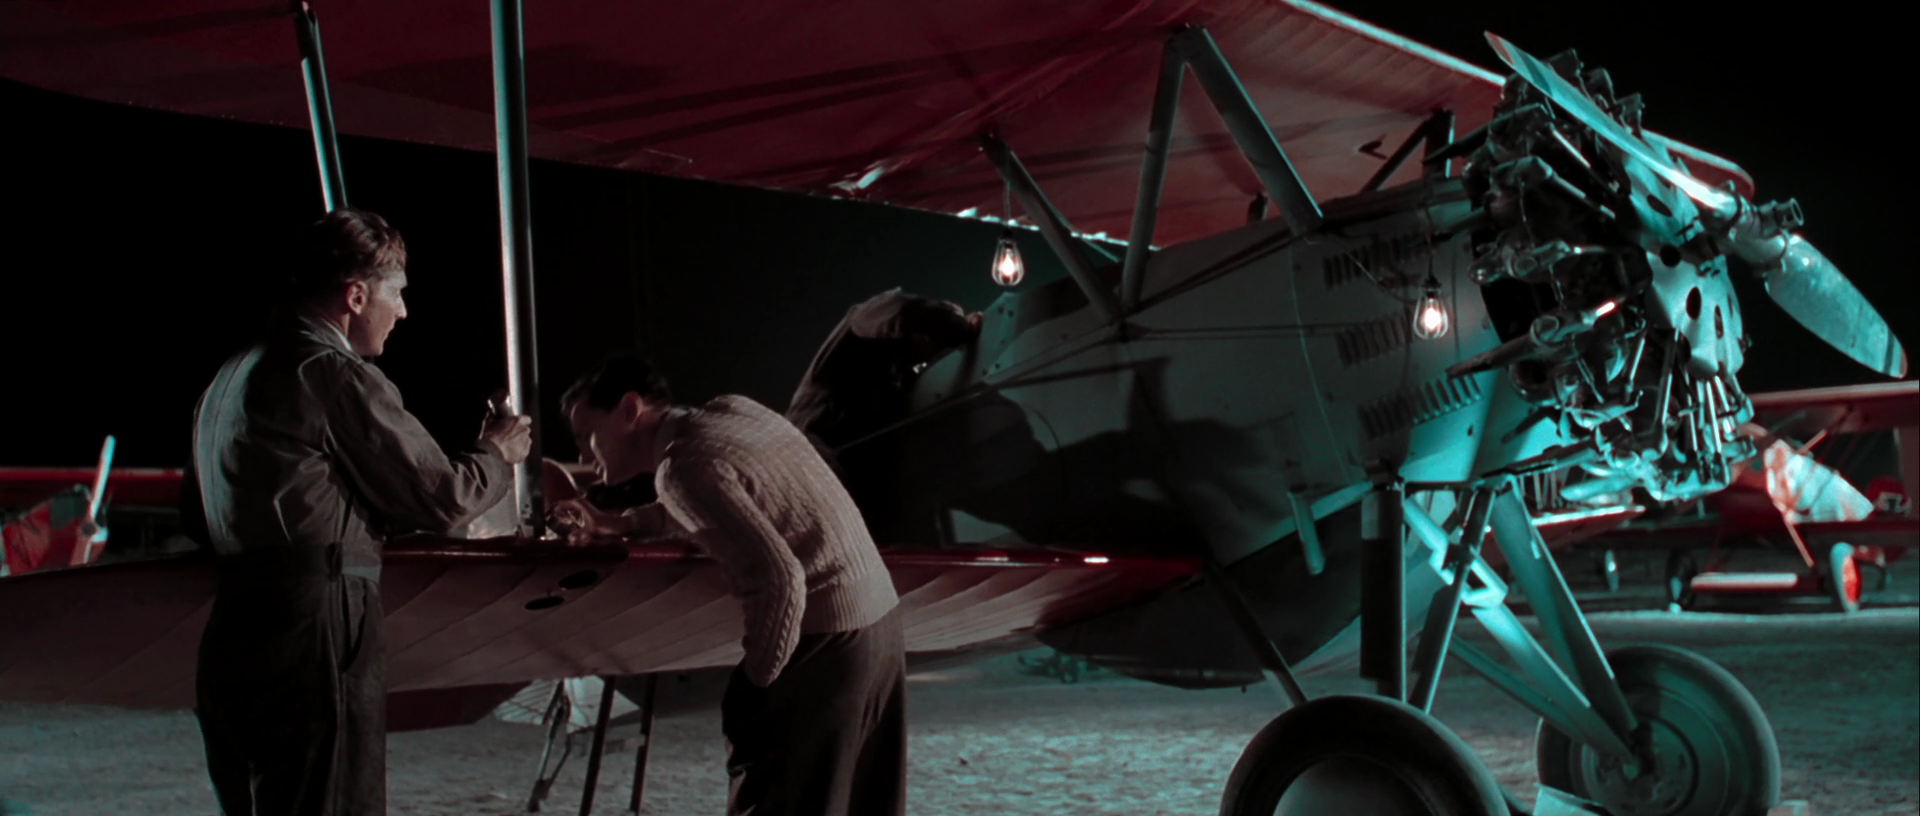 Авиатор - The Aviator (2004) HD-DVDRip-1080p 02-07-17.PNG.